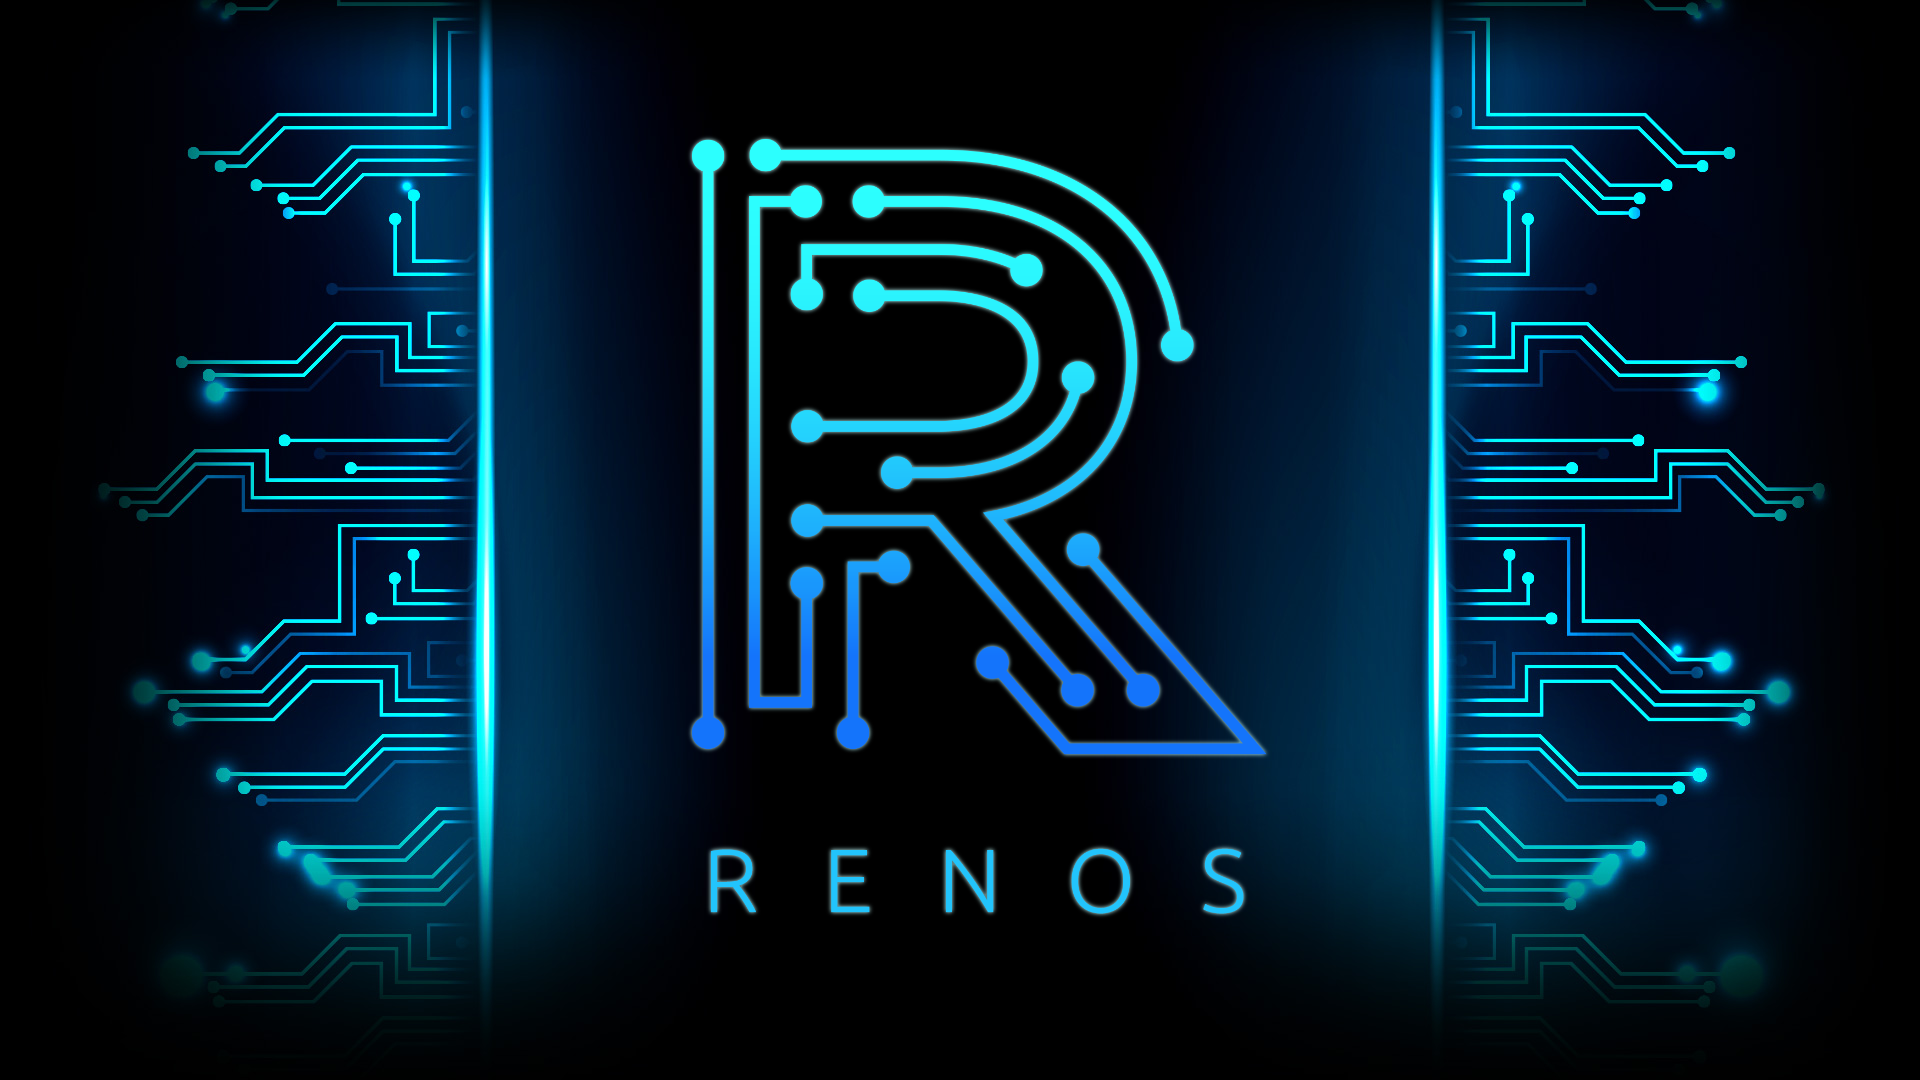 Renos-logo-image.png